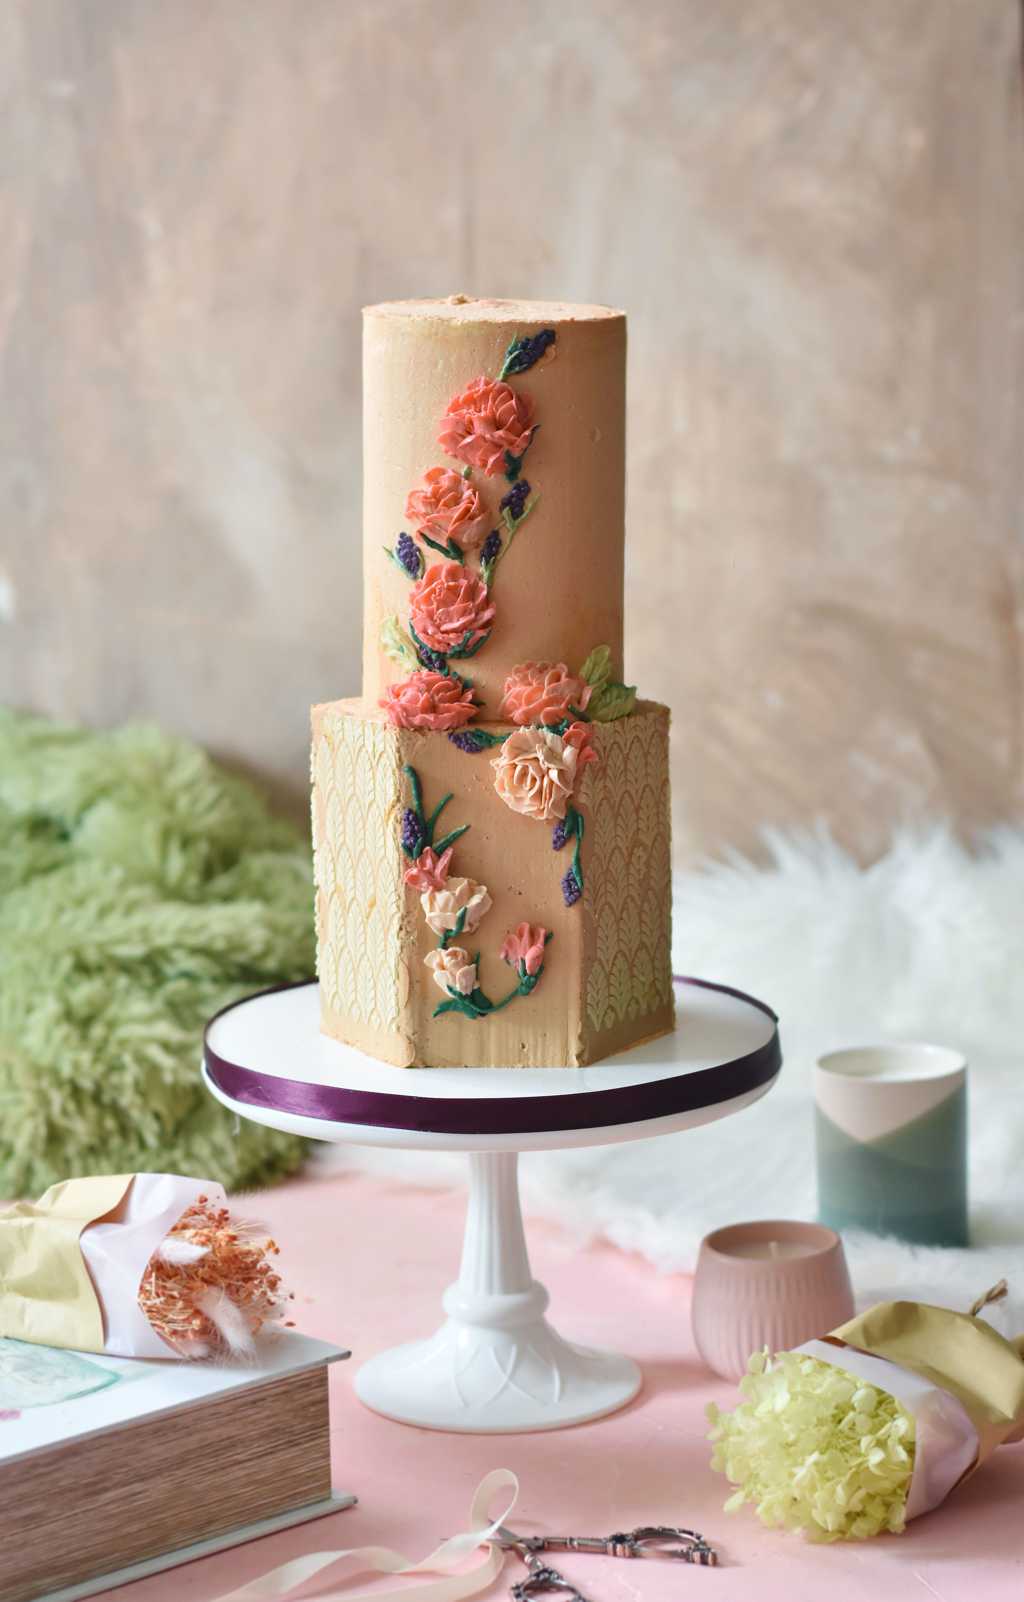 爱厨房的幸福之味: 韩式裱花蛋糕~~~初体验 Buttercream Cake